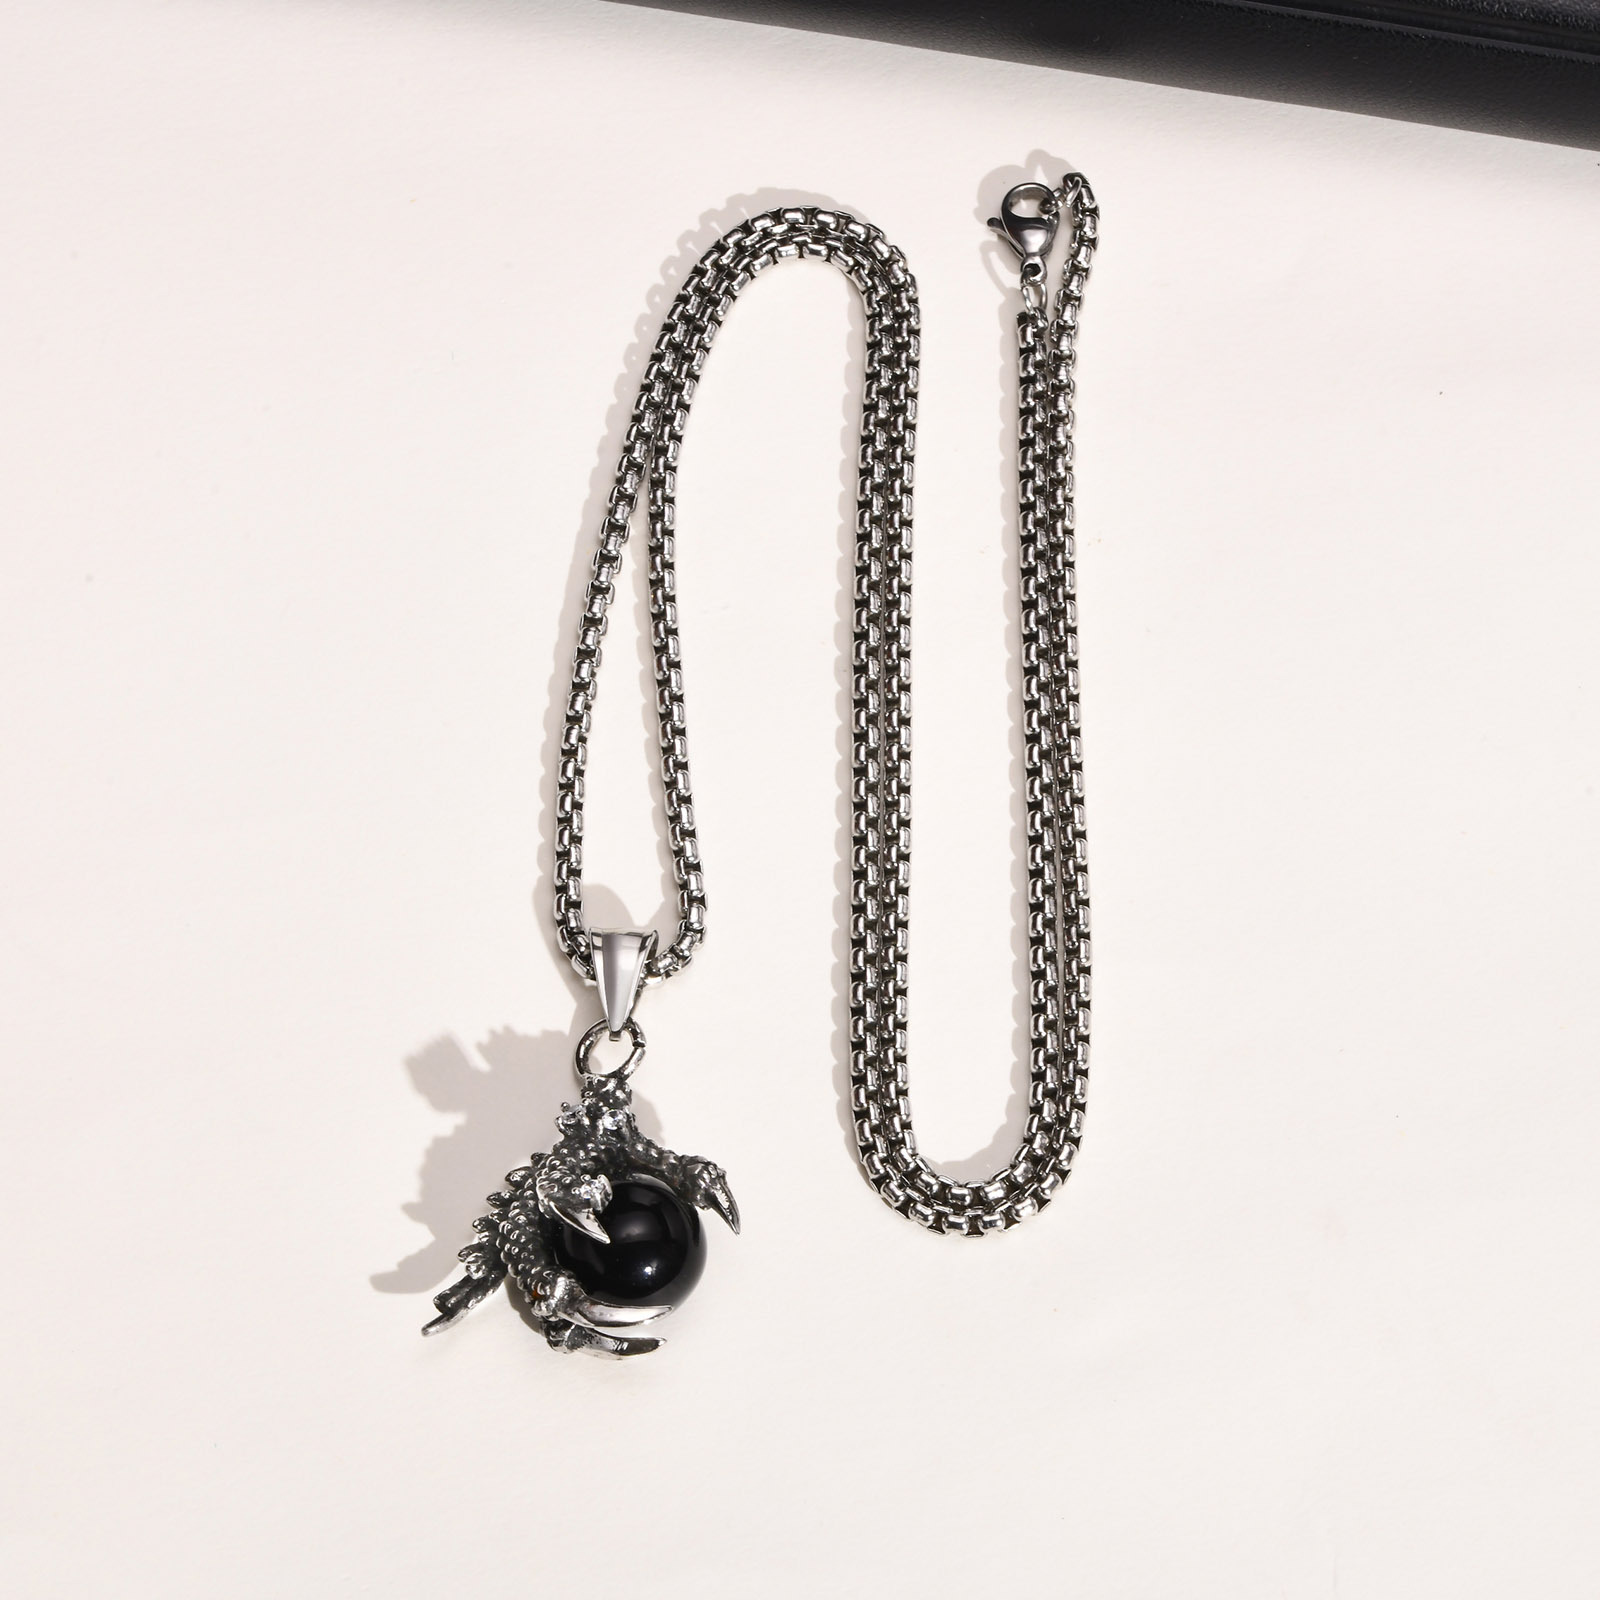 Black beads   matching chain